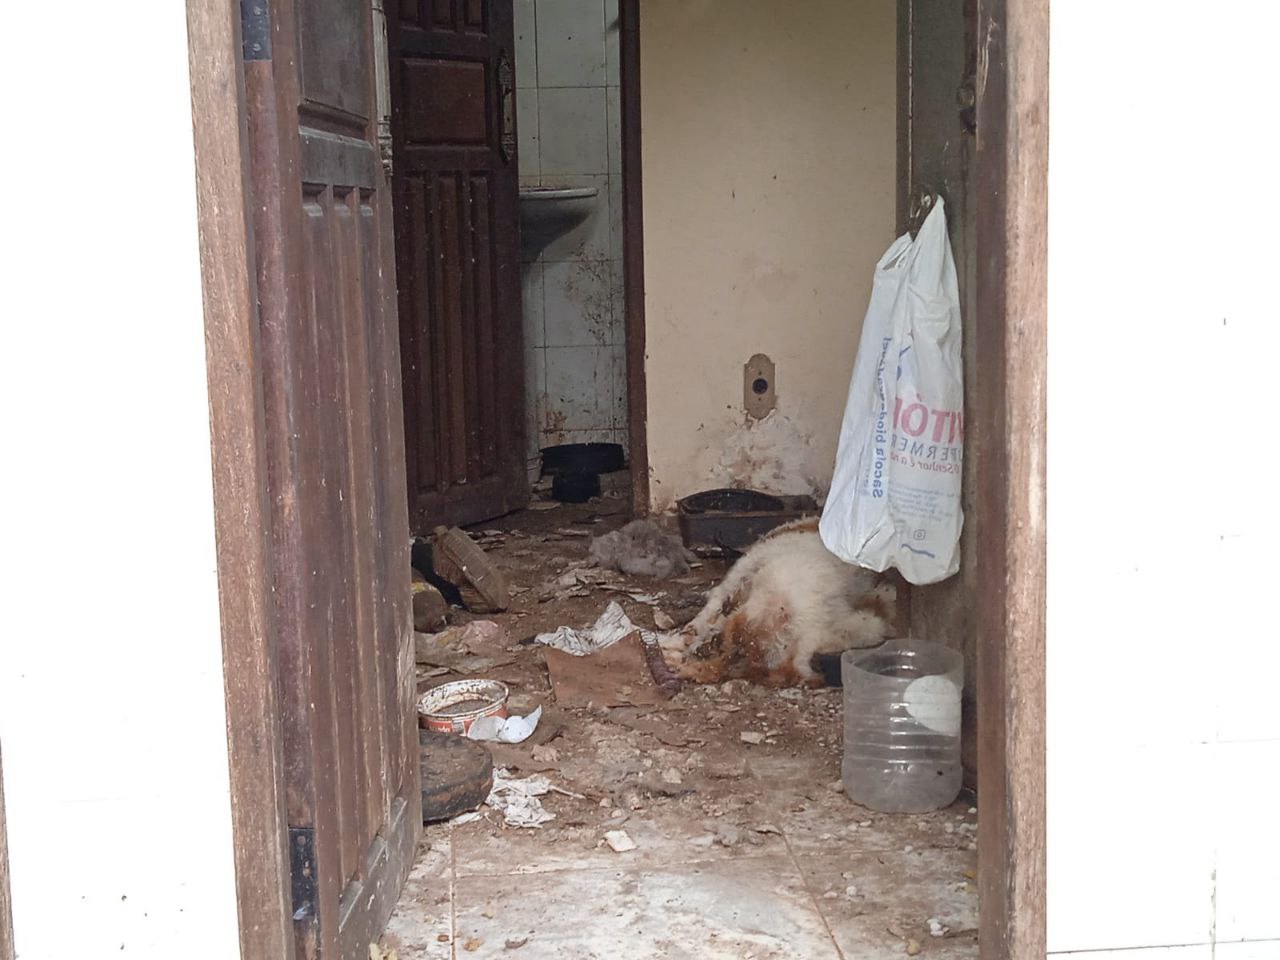 Cão morreu em cômodo da casa - Foto: Caio Guarlotte / Portal do Holanda